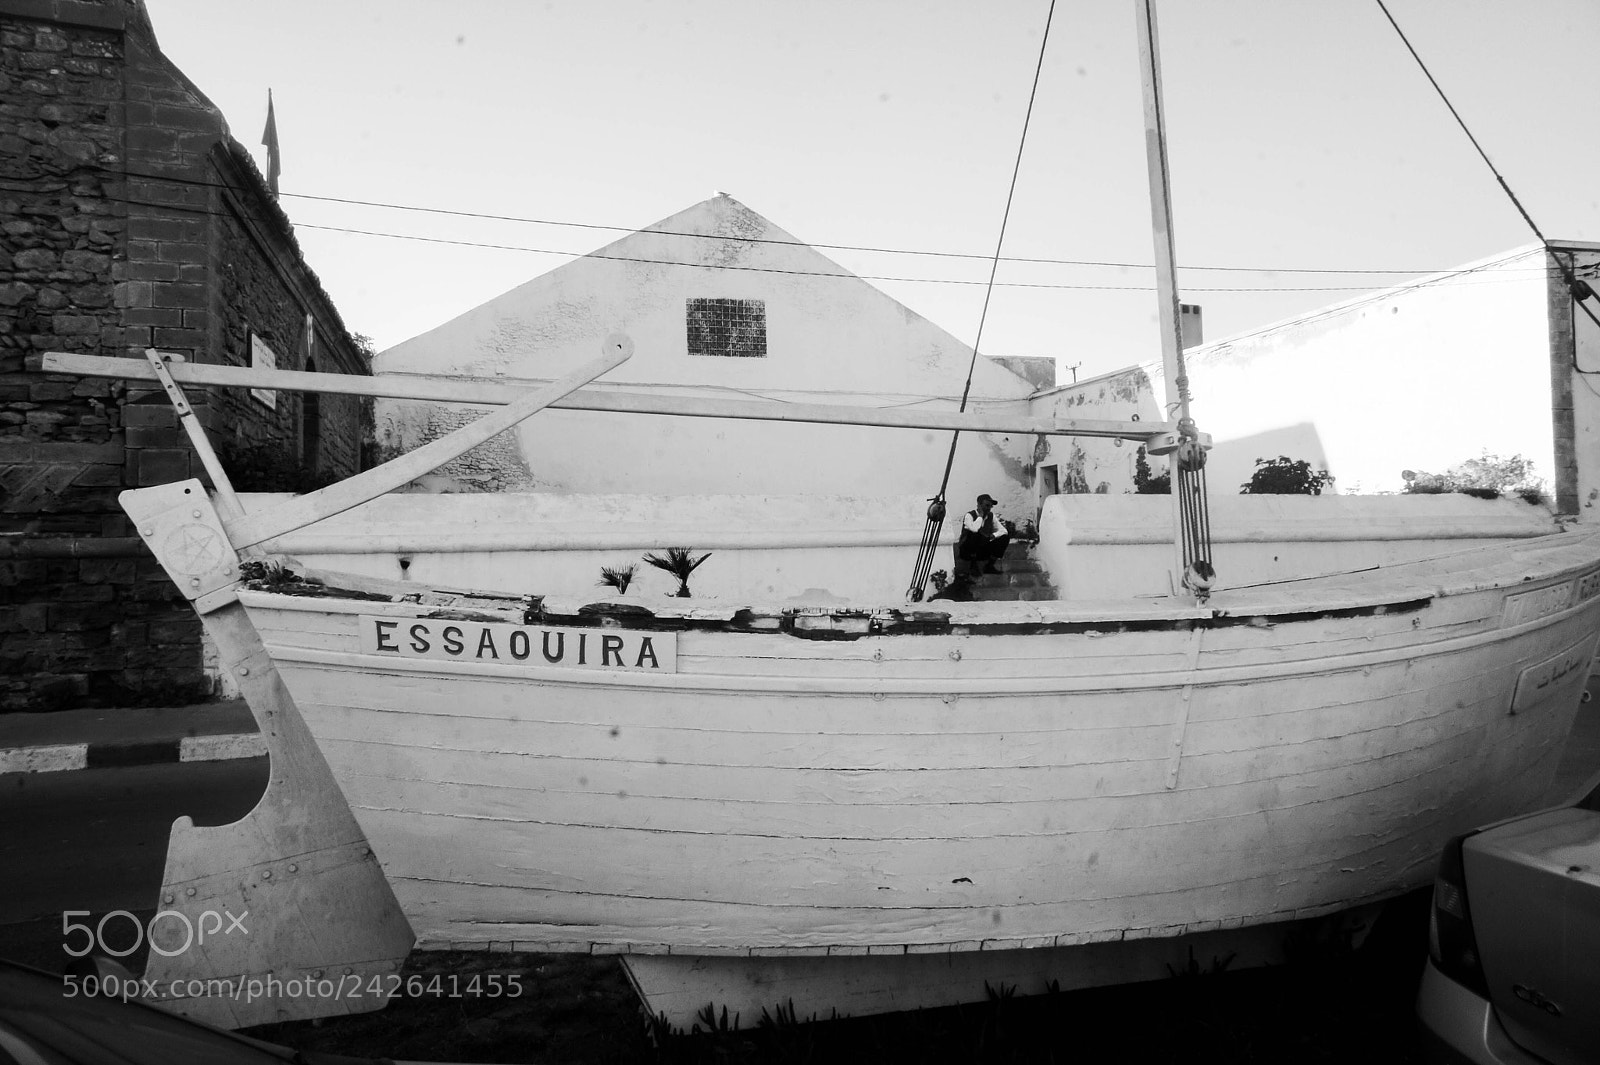 Sony Alpha NEX-3 sample photo. Boat life photography